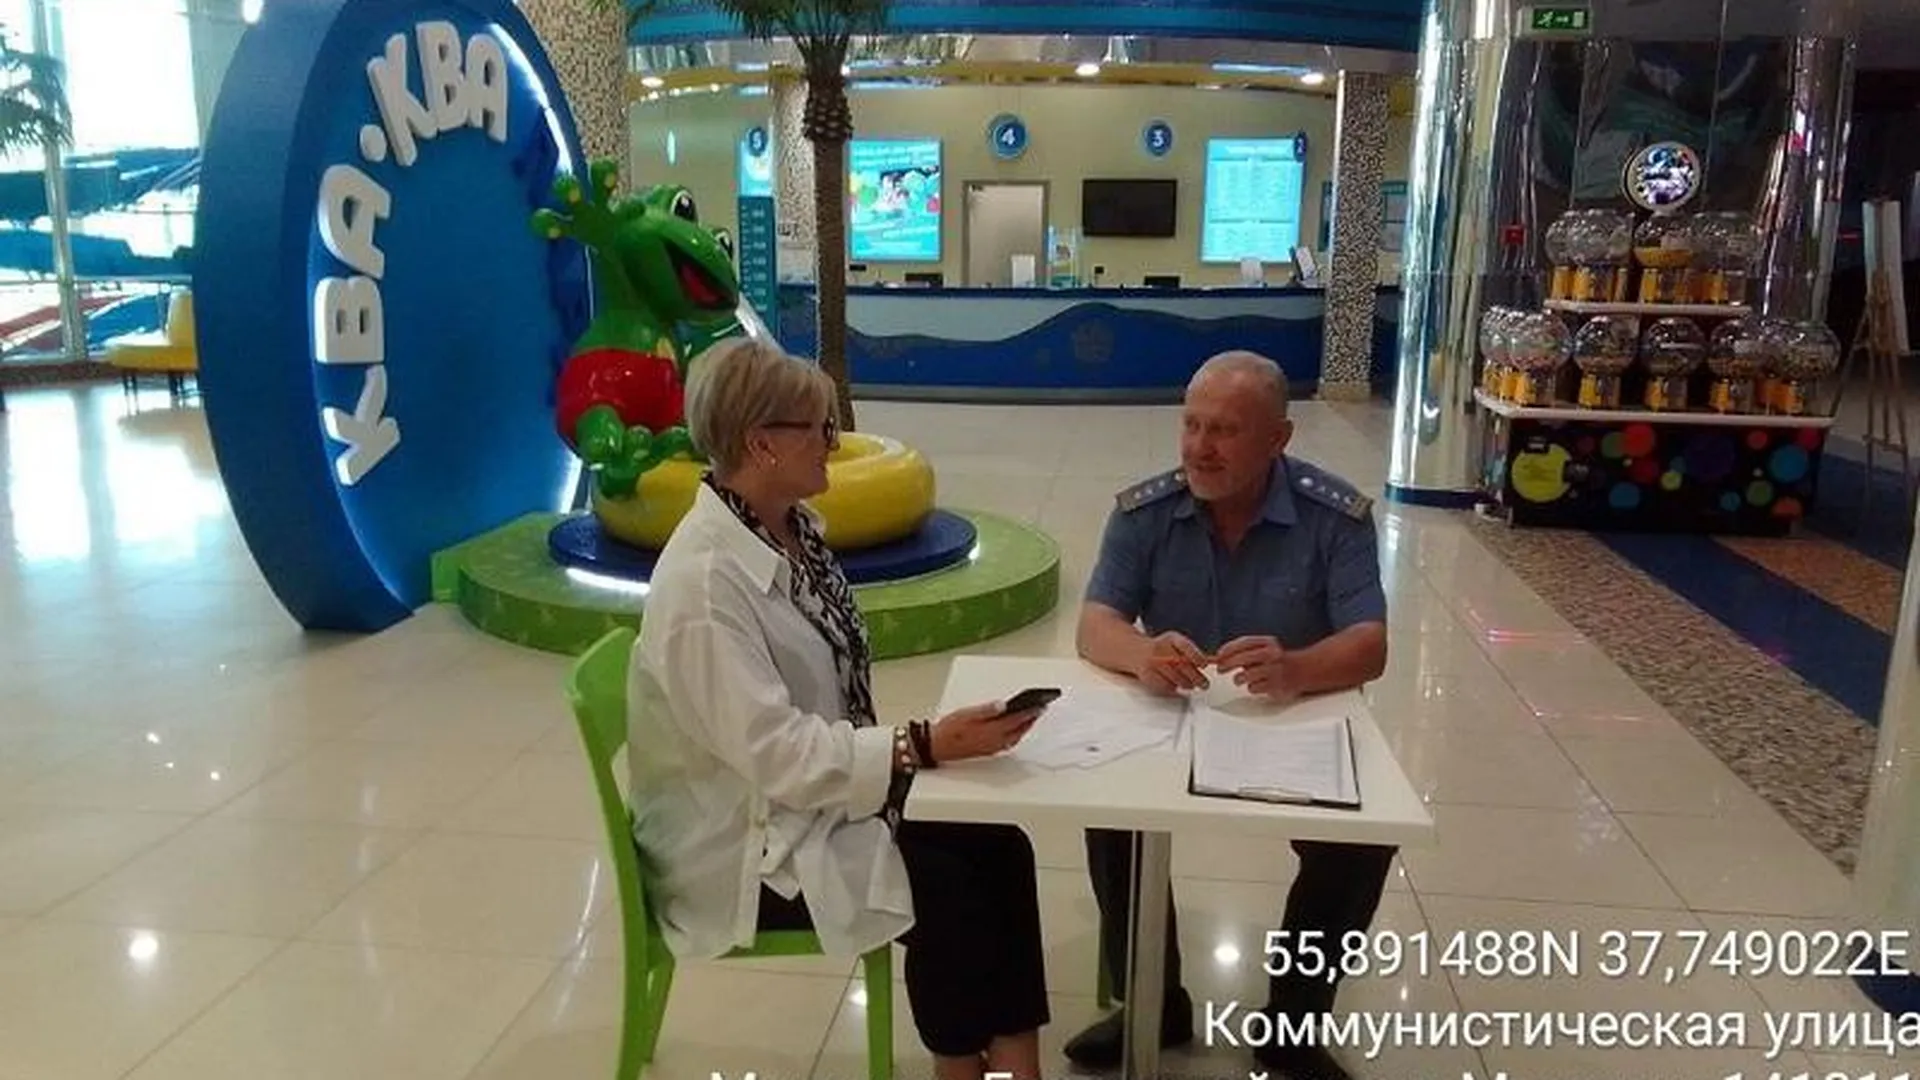 Инспекторы Минэкологии провели профилактическую беседу с собственником аквапарка в Мытищах